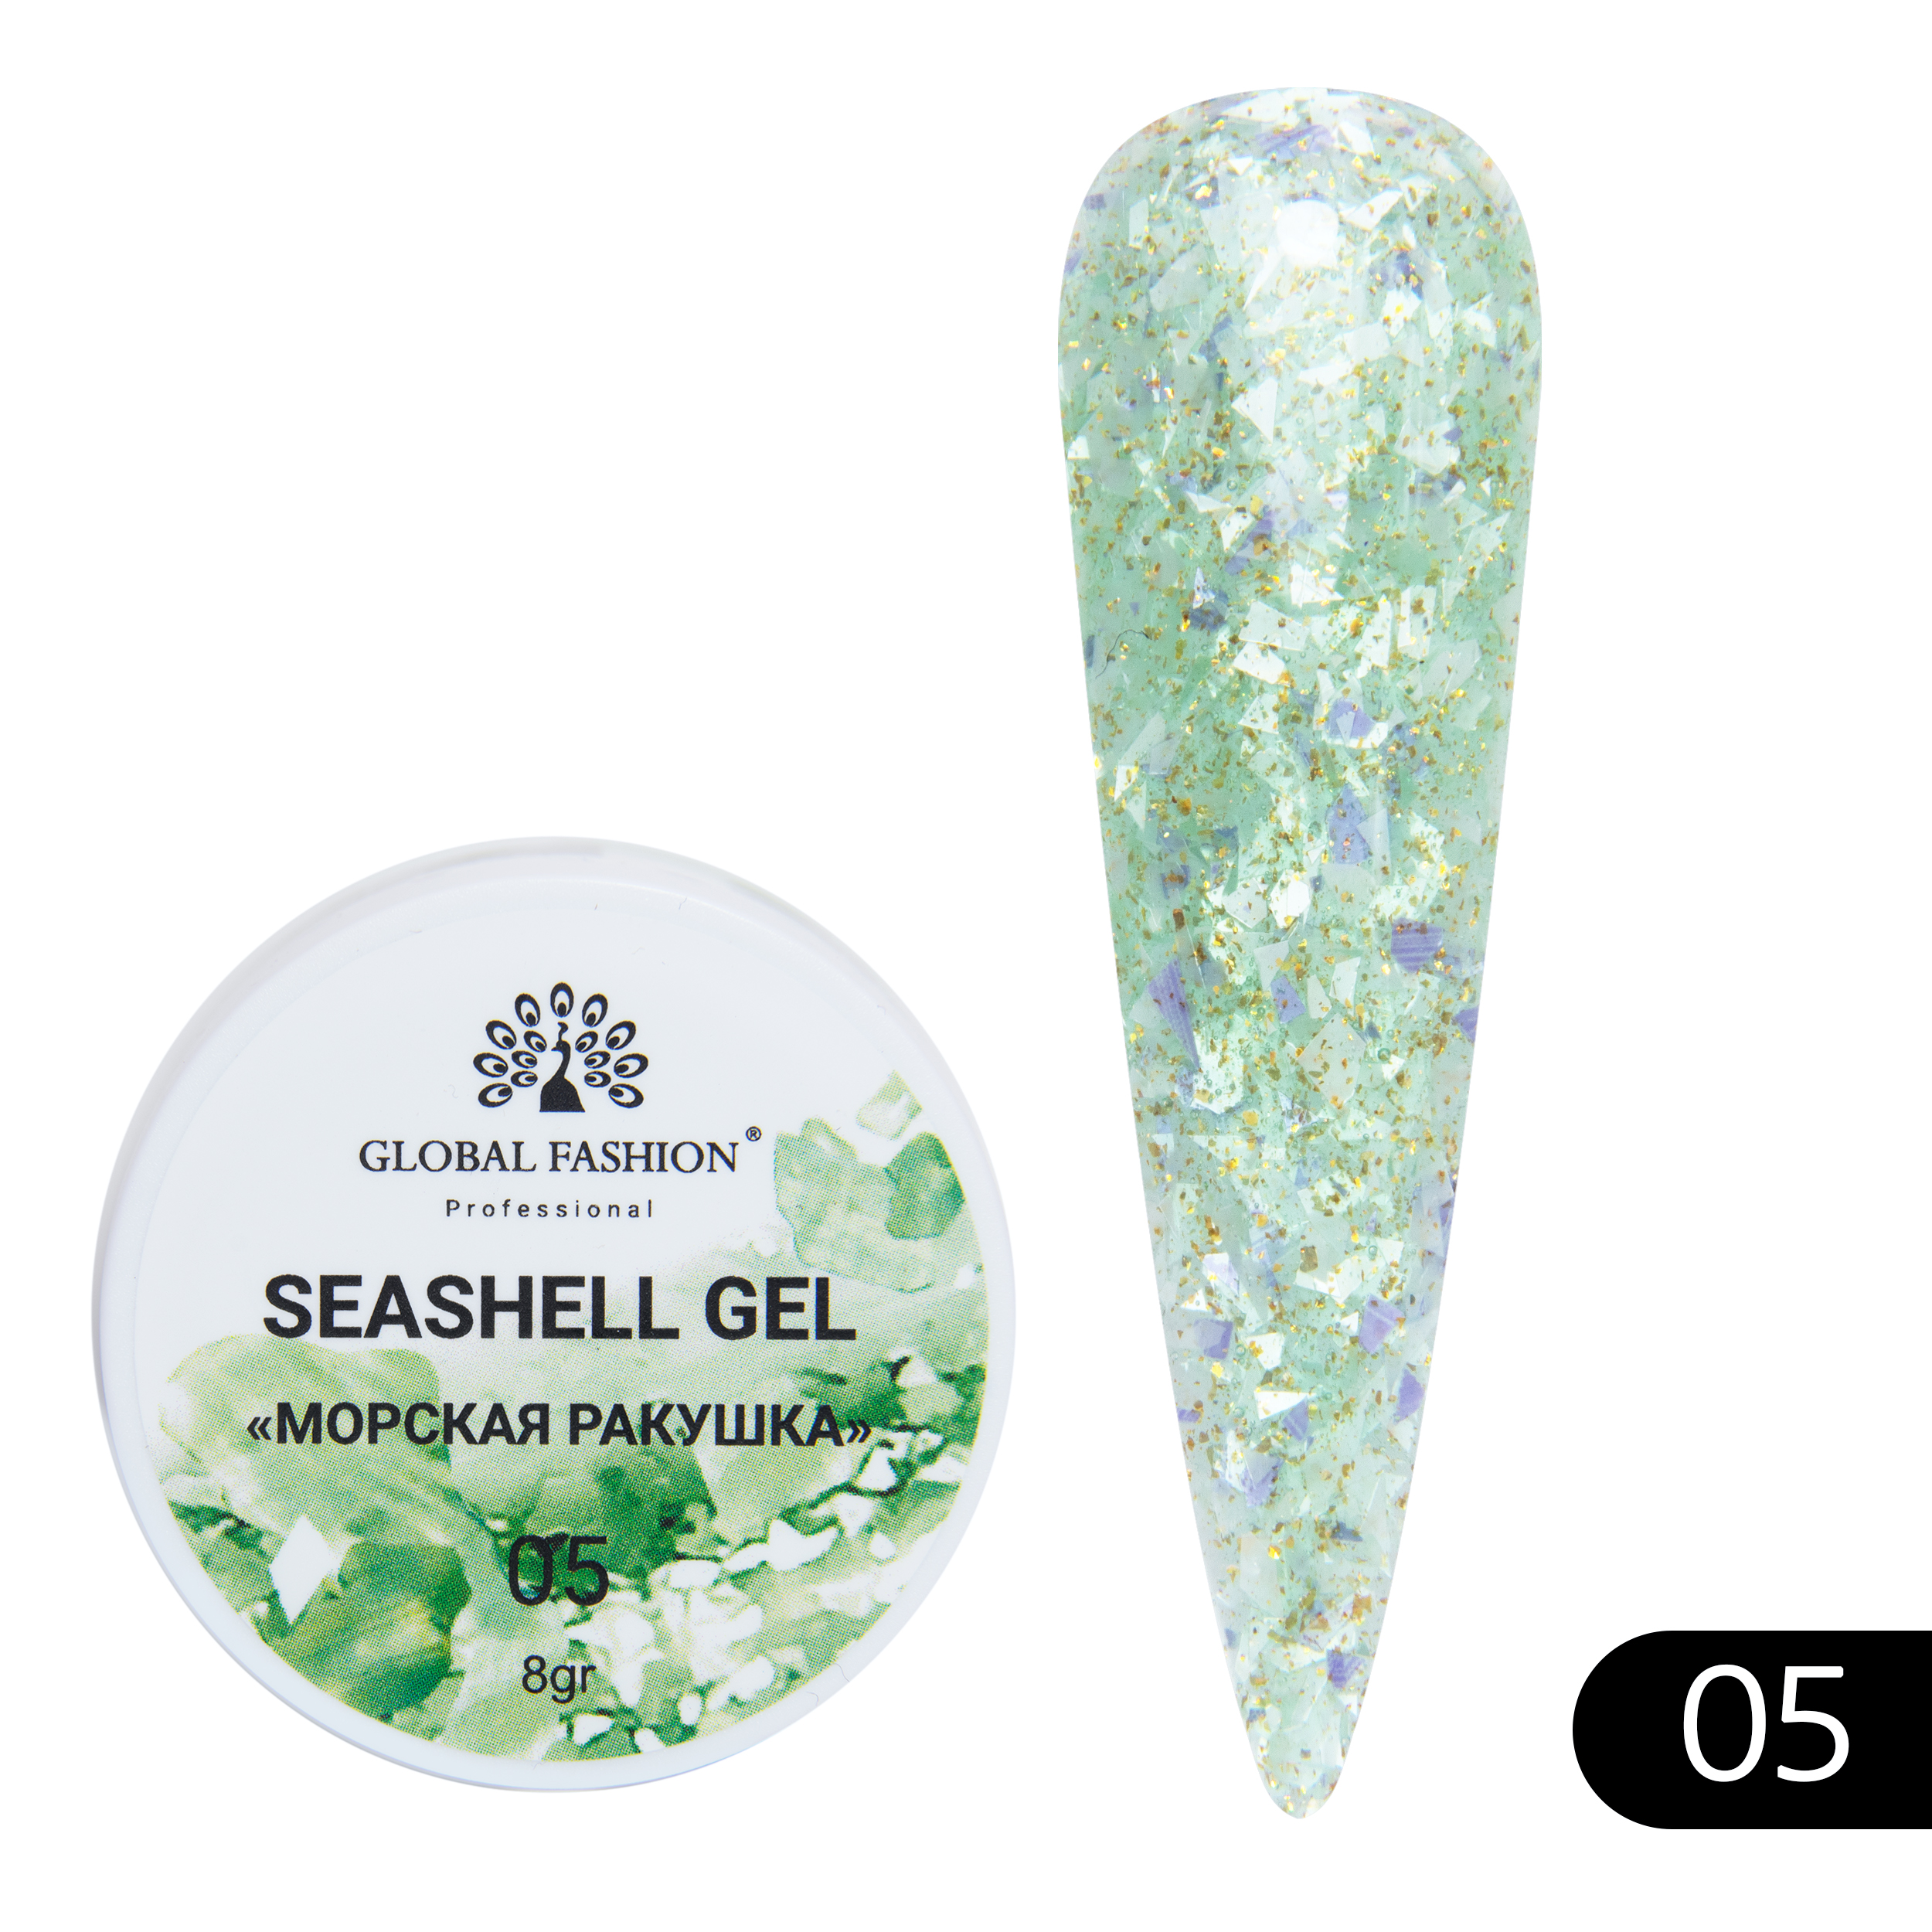 Гель-краска для ногтей Global Fashion с мраморным эффектом ракушки Seashell Gel №05 5 г декоративные ракушки витые 5 штук